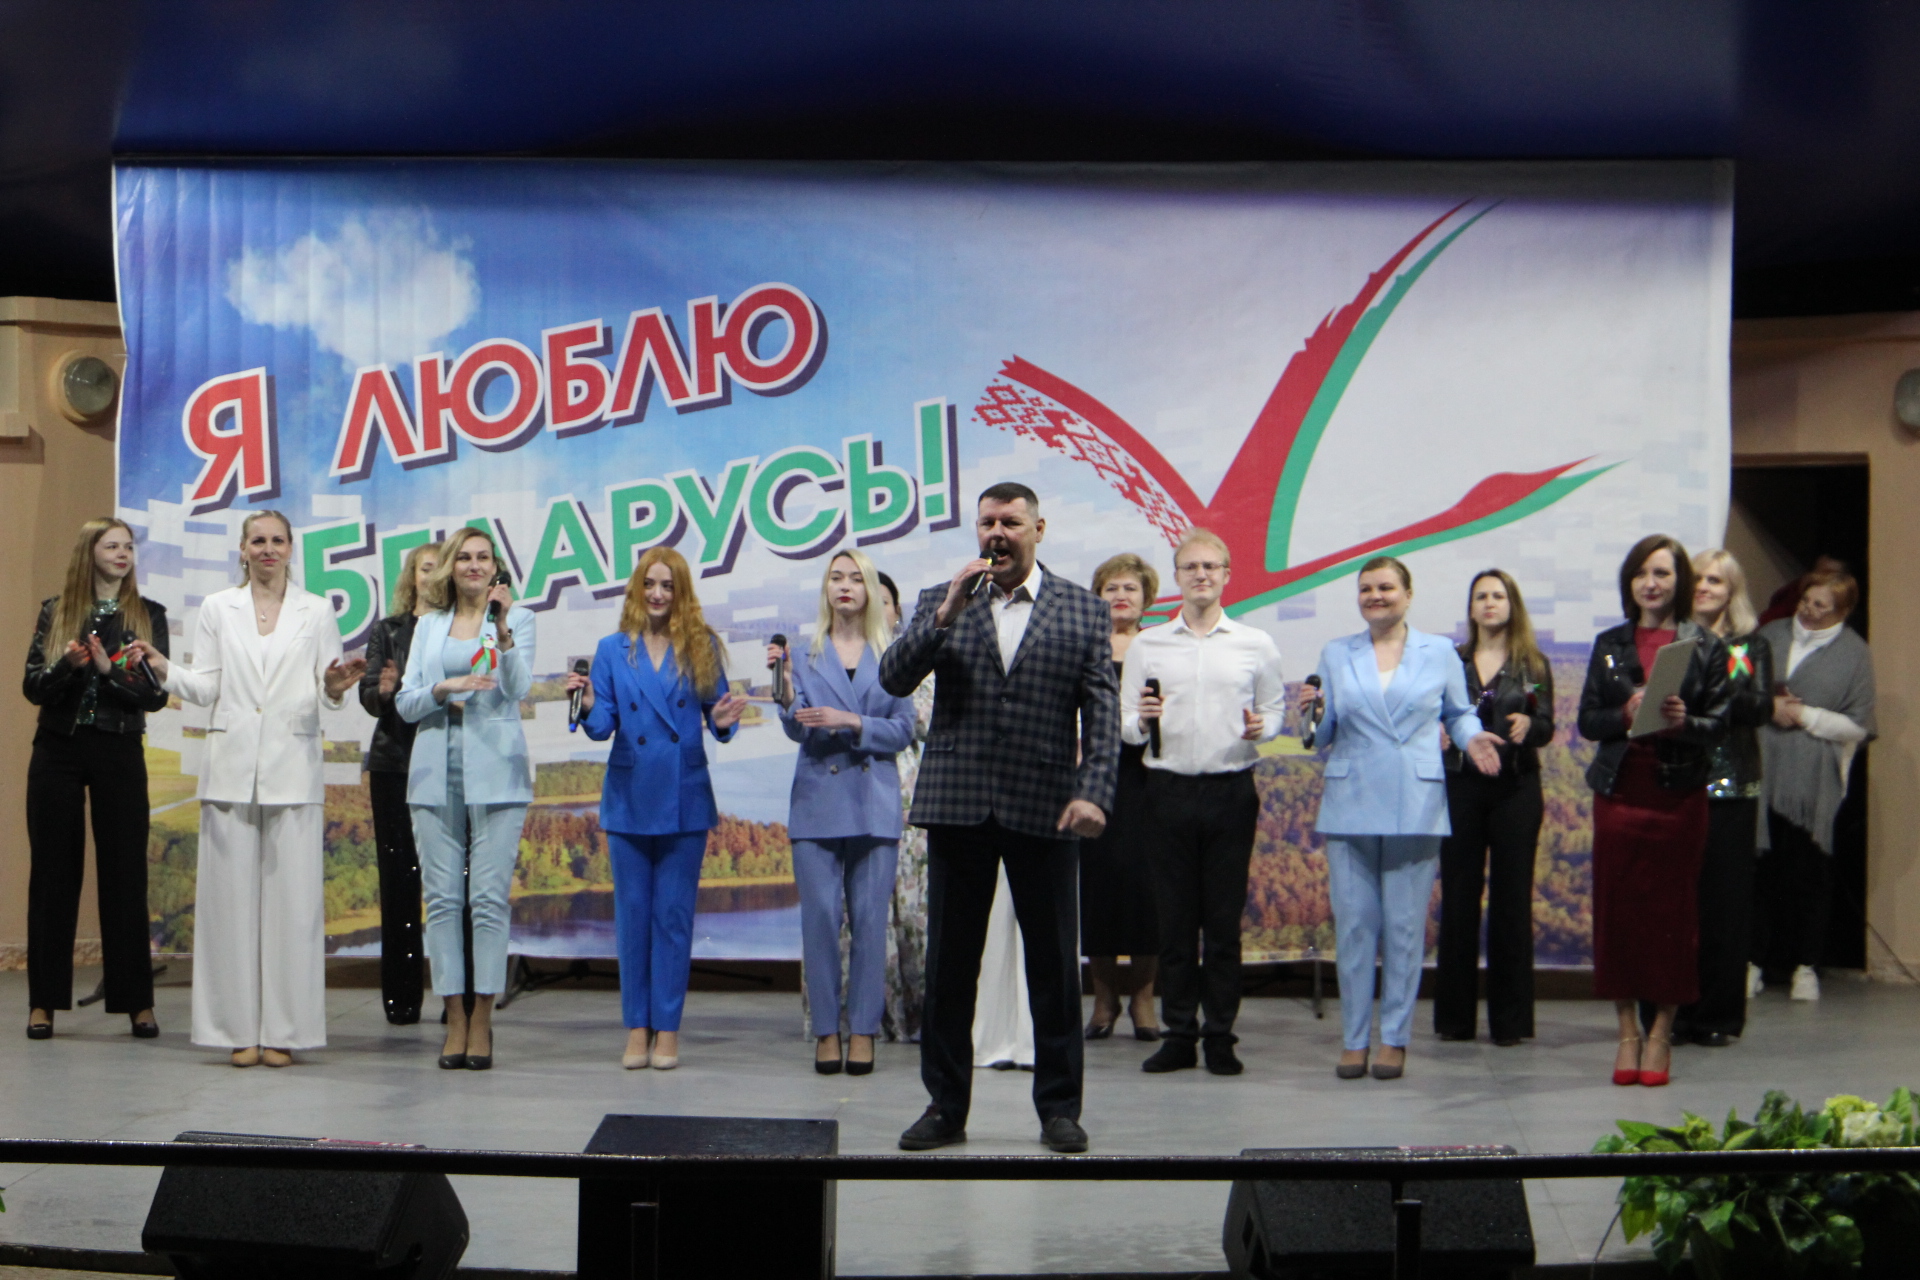 Сморгонцы после вечерней концертной программы вместе спели «День Победы»